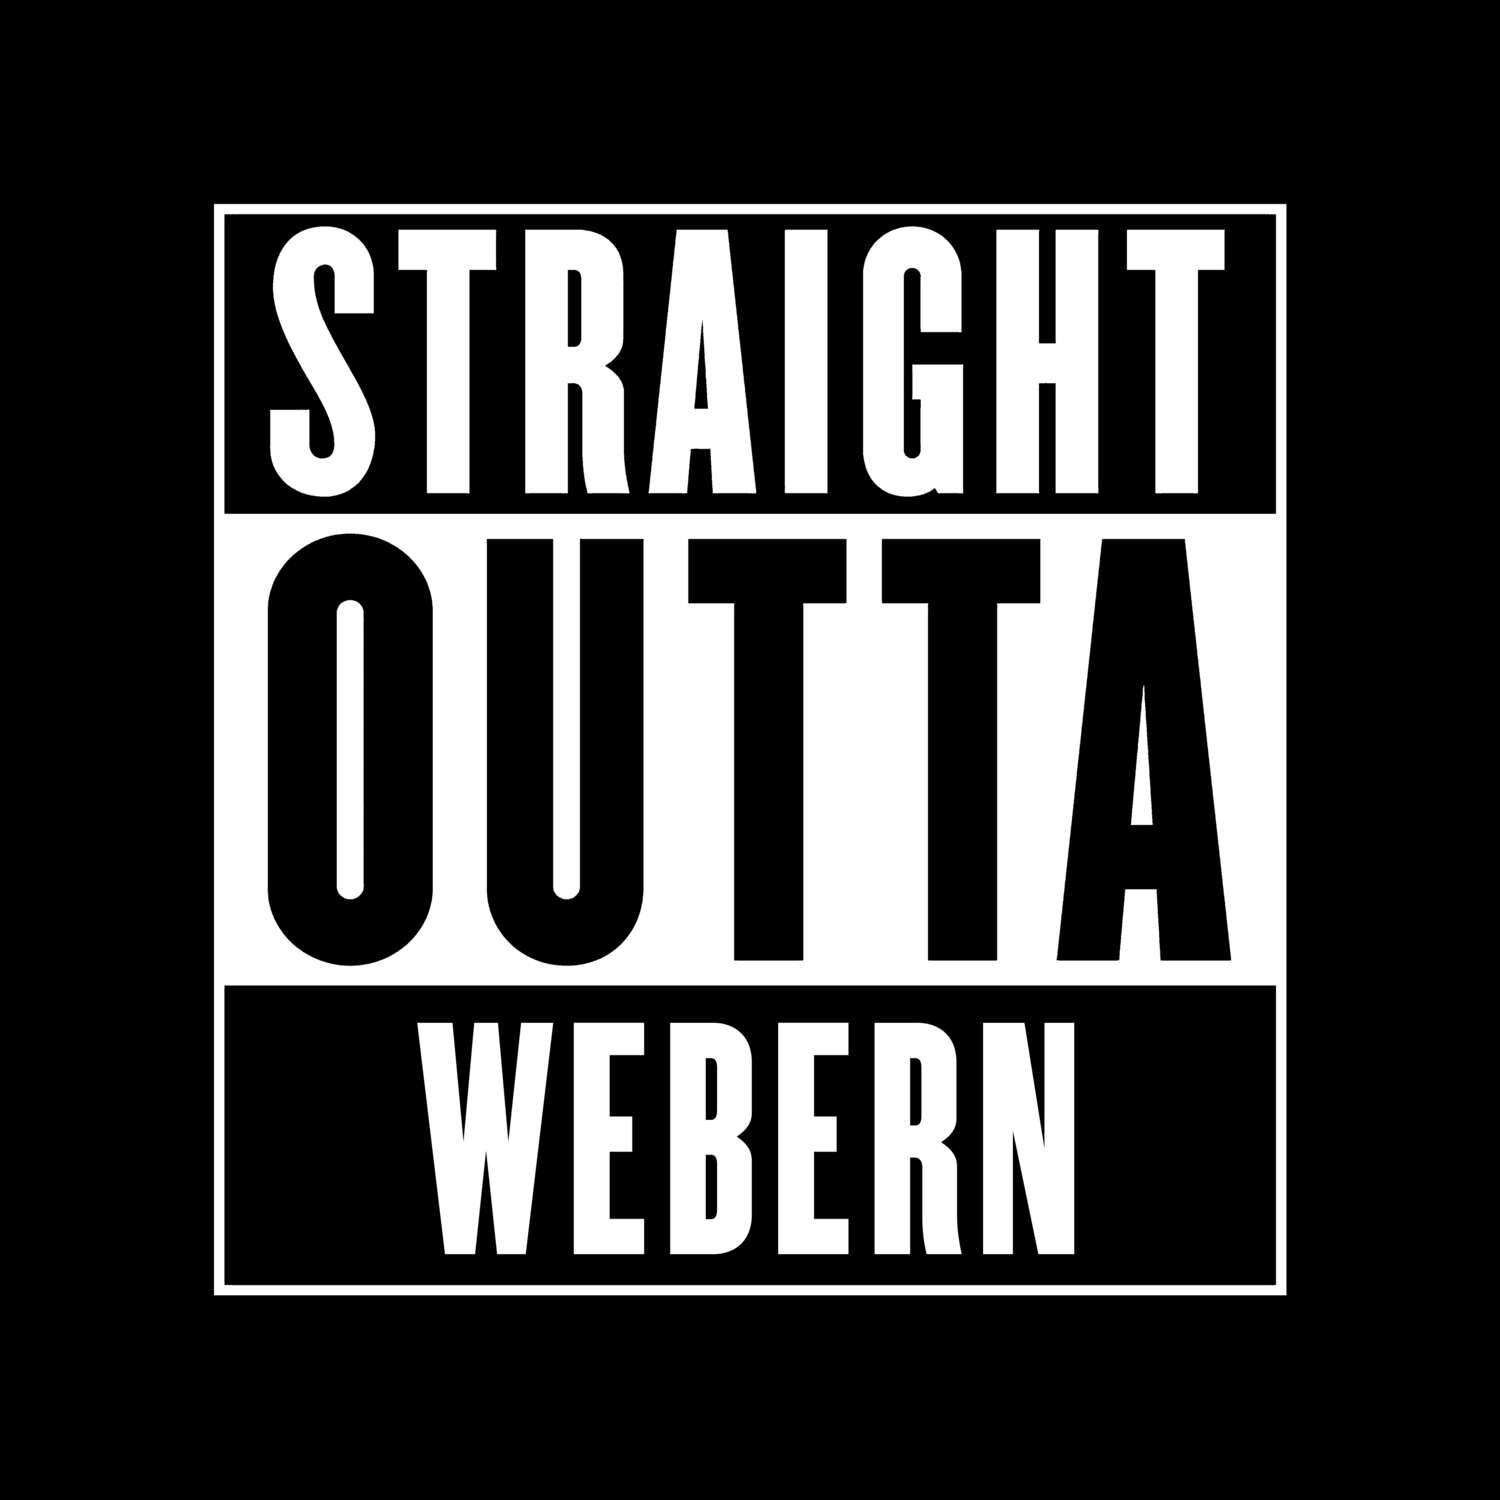 Webern T-Shirt »Straight Outta«